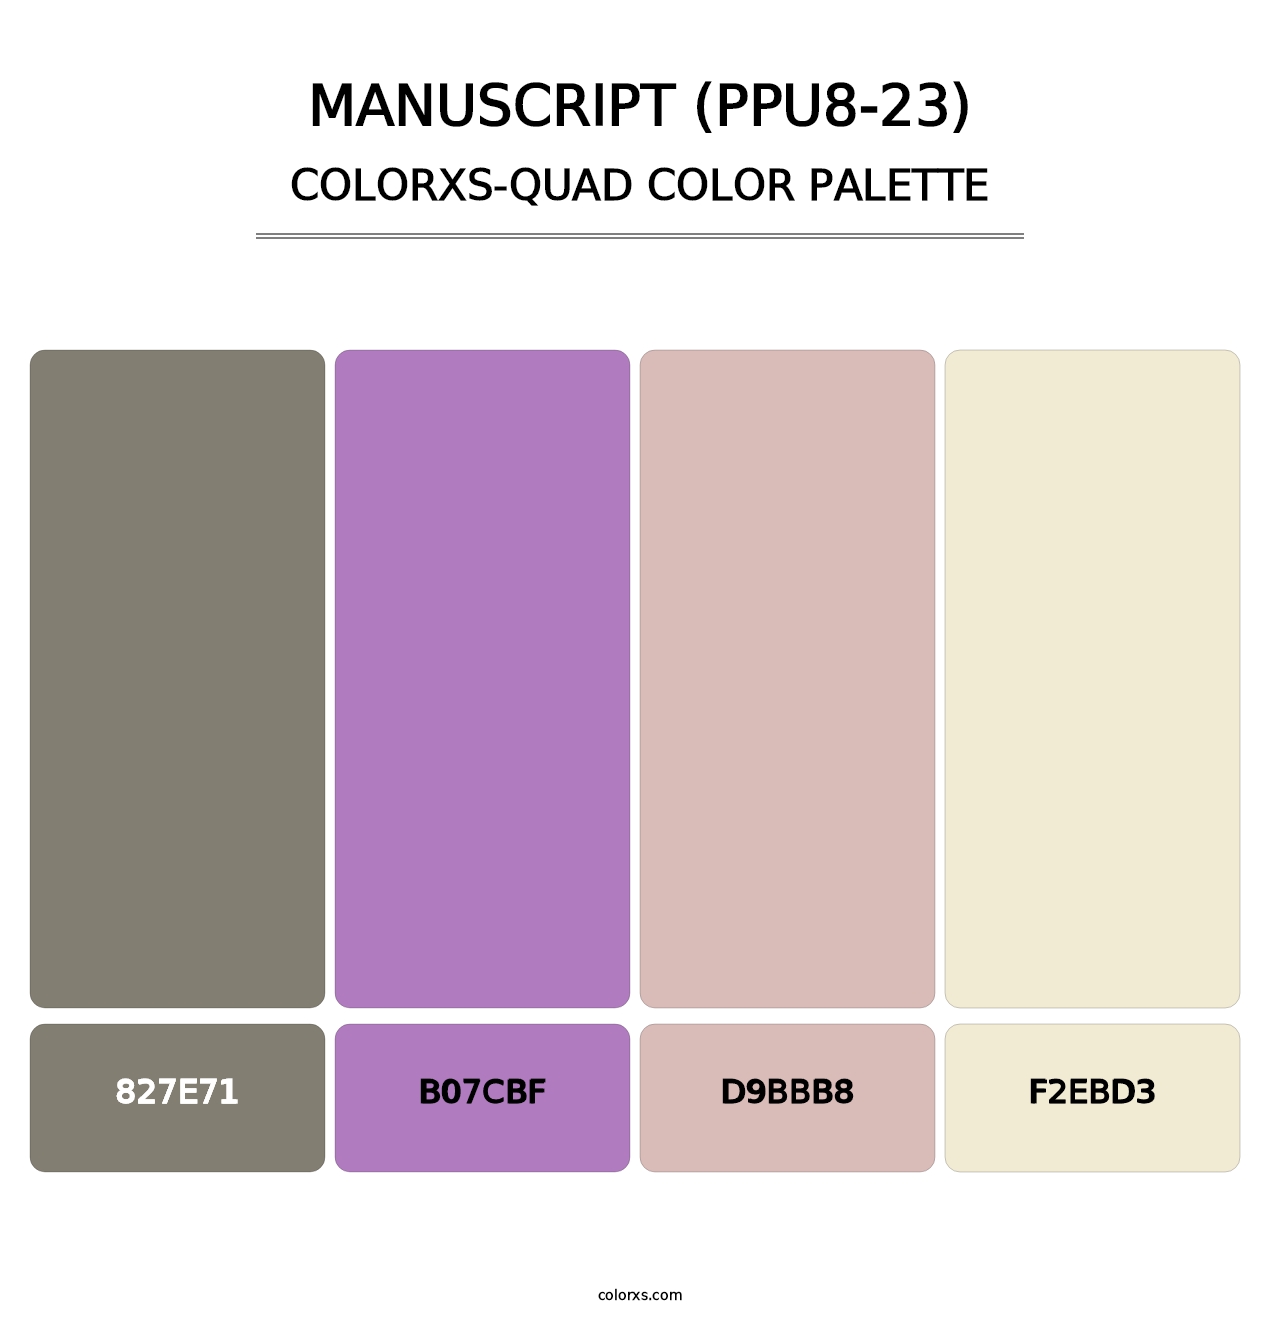 Manuscript (PPU8-23) - Colorxs Quad Palette